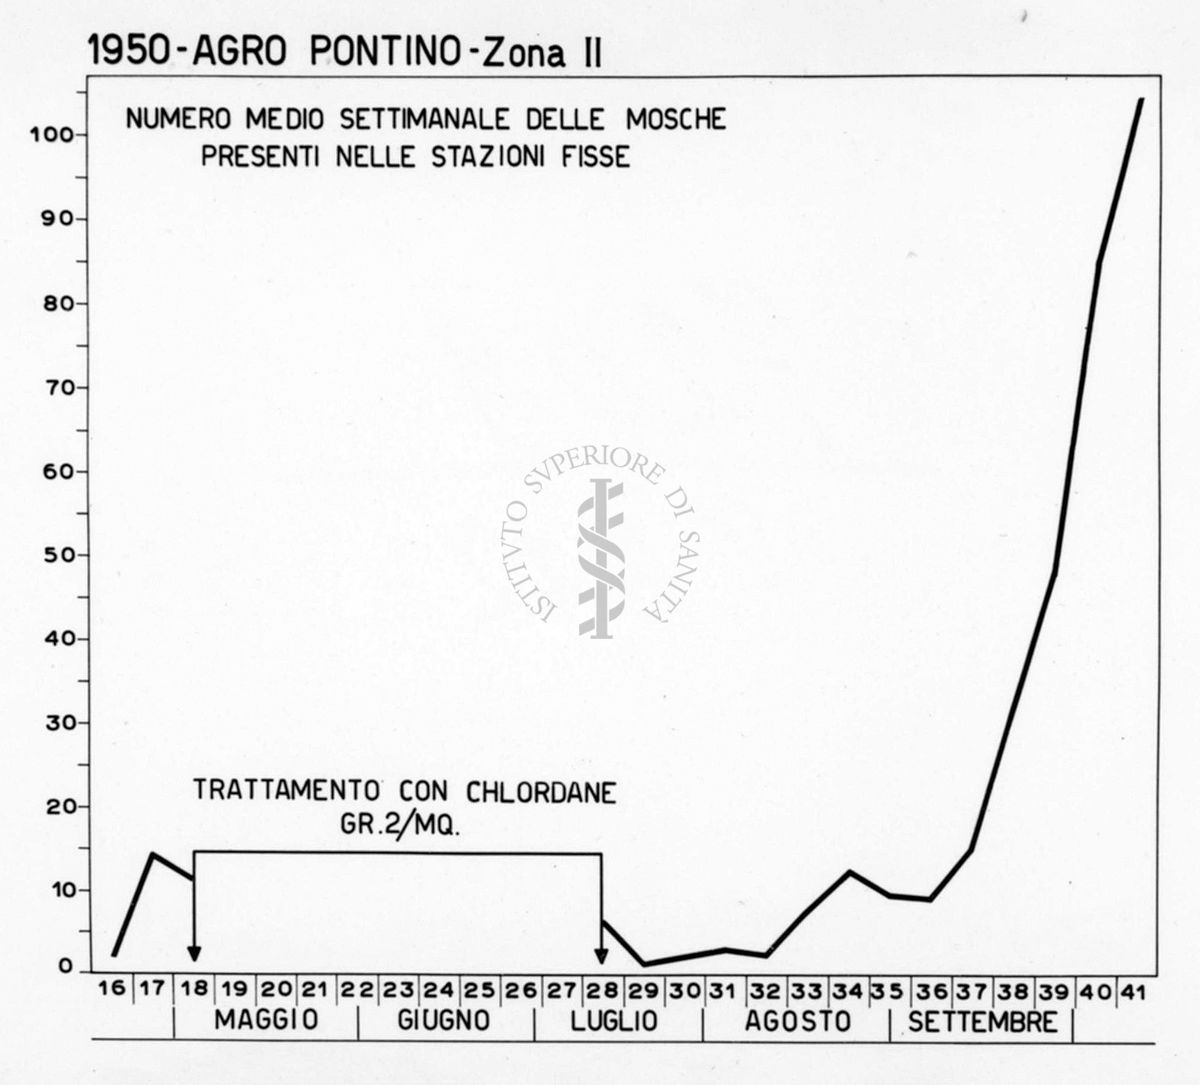 Diagramma riguardante il numero medio settimanale delle mosche presenti nelle stazioni fisse dell'Agro Pontino nel 1950 II Zona